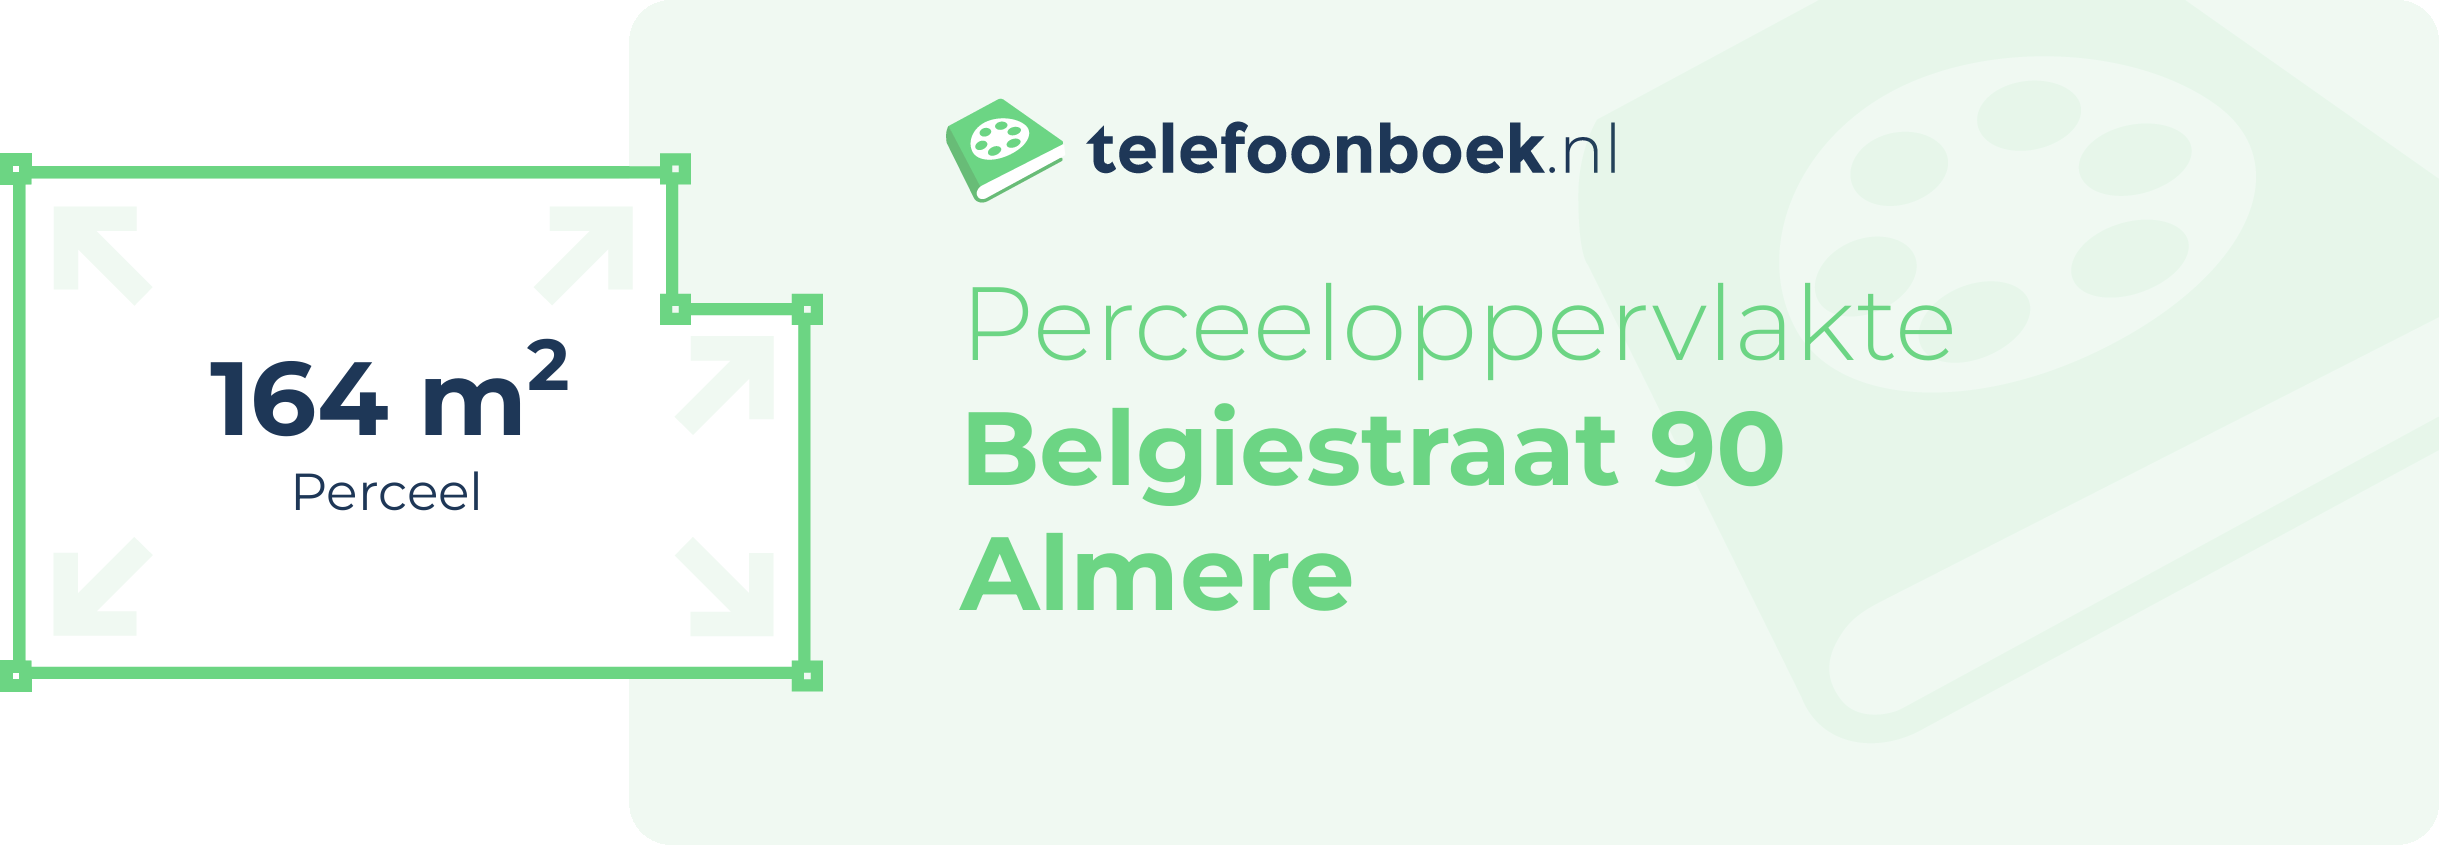 Perceeloppervlakte Belgiestraat 90 Almere